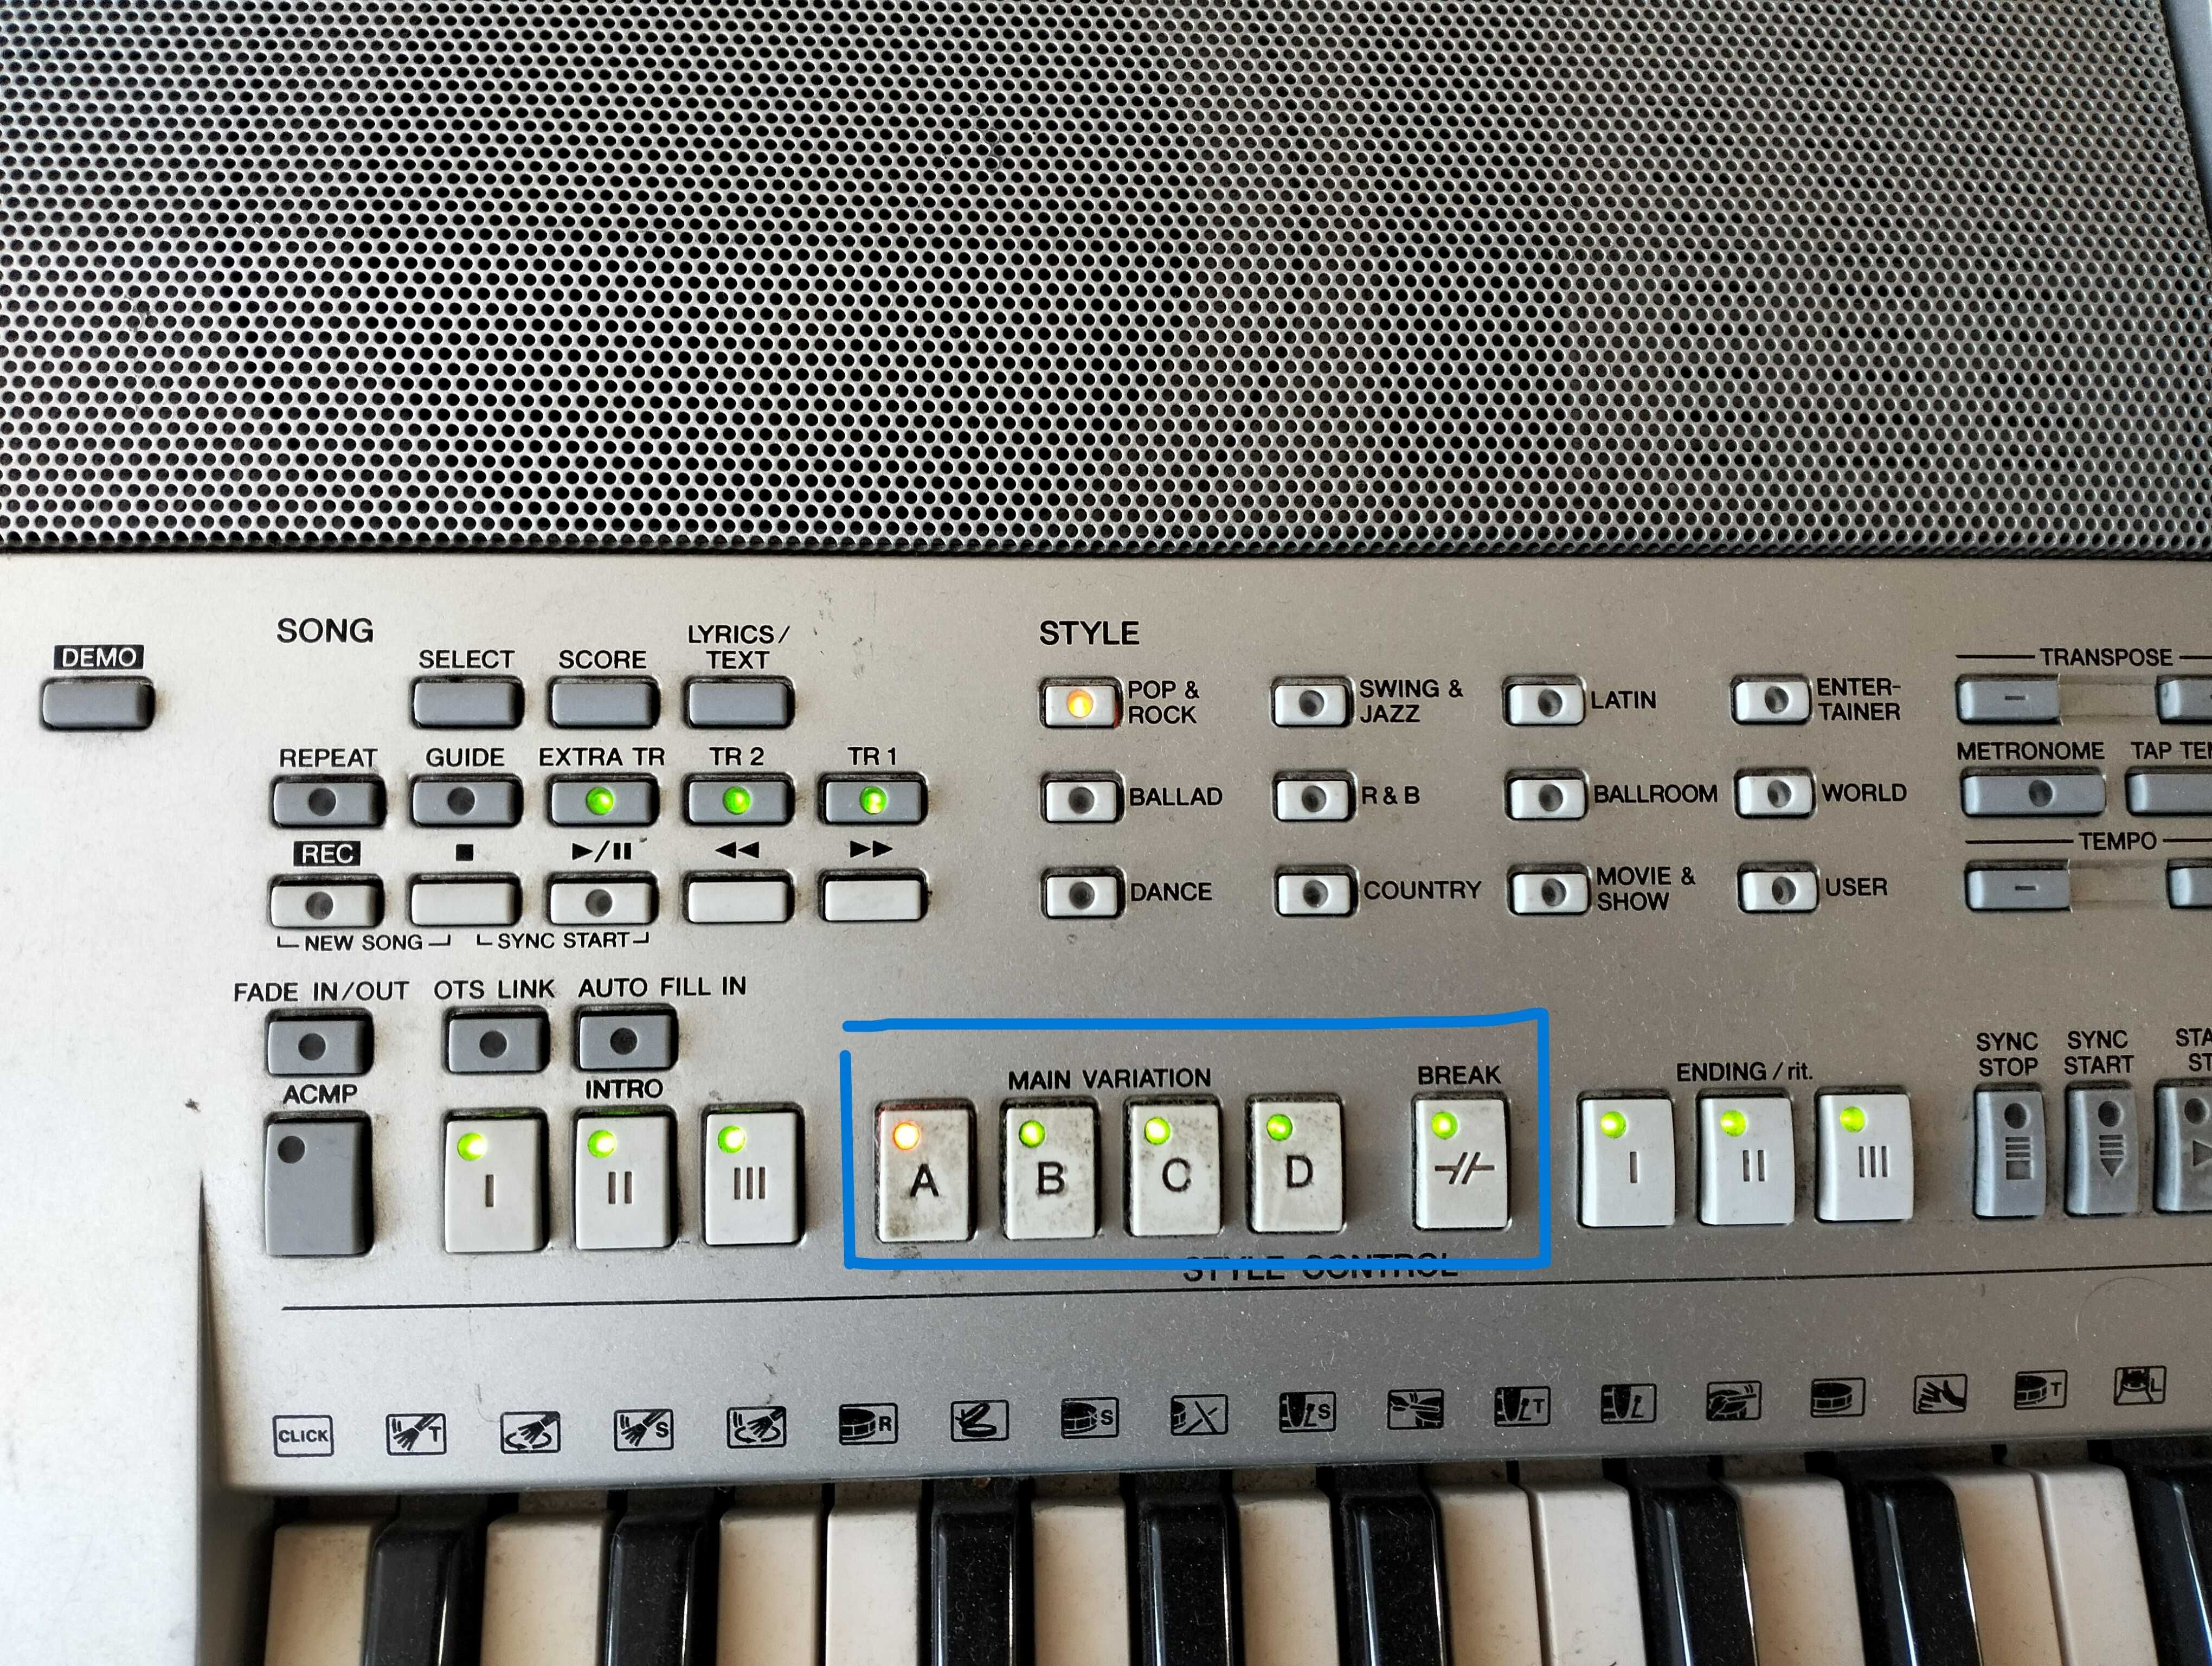 Keyboard Yamaha PSR-S710